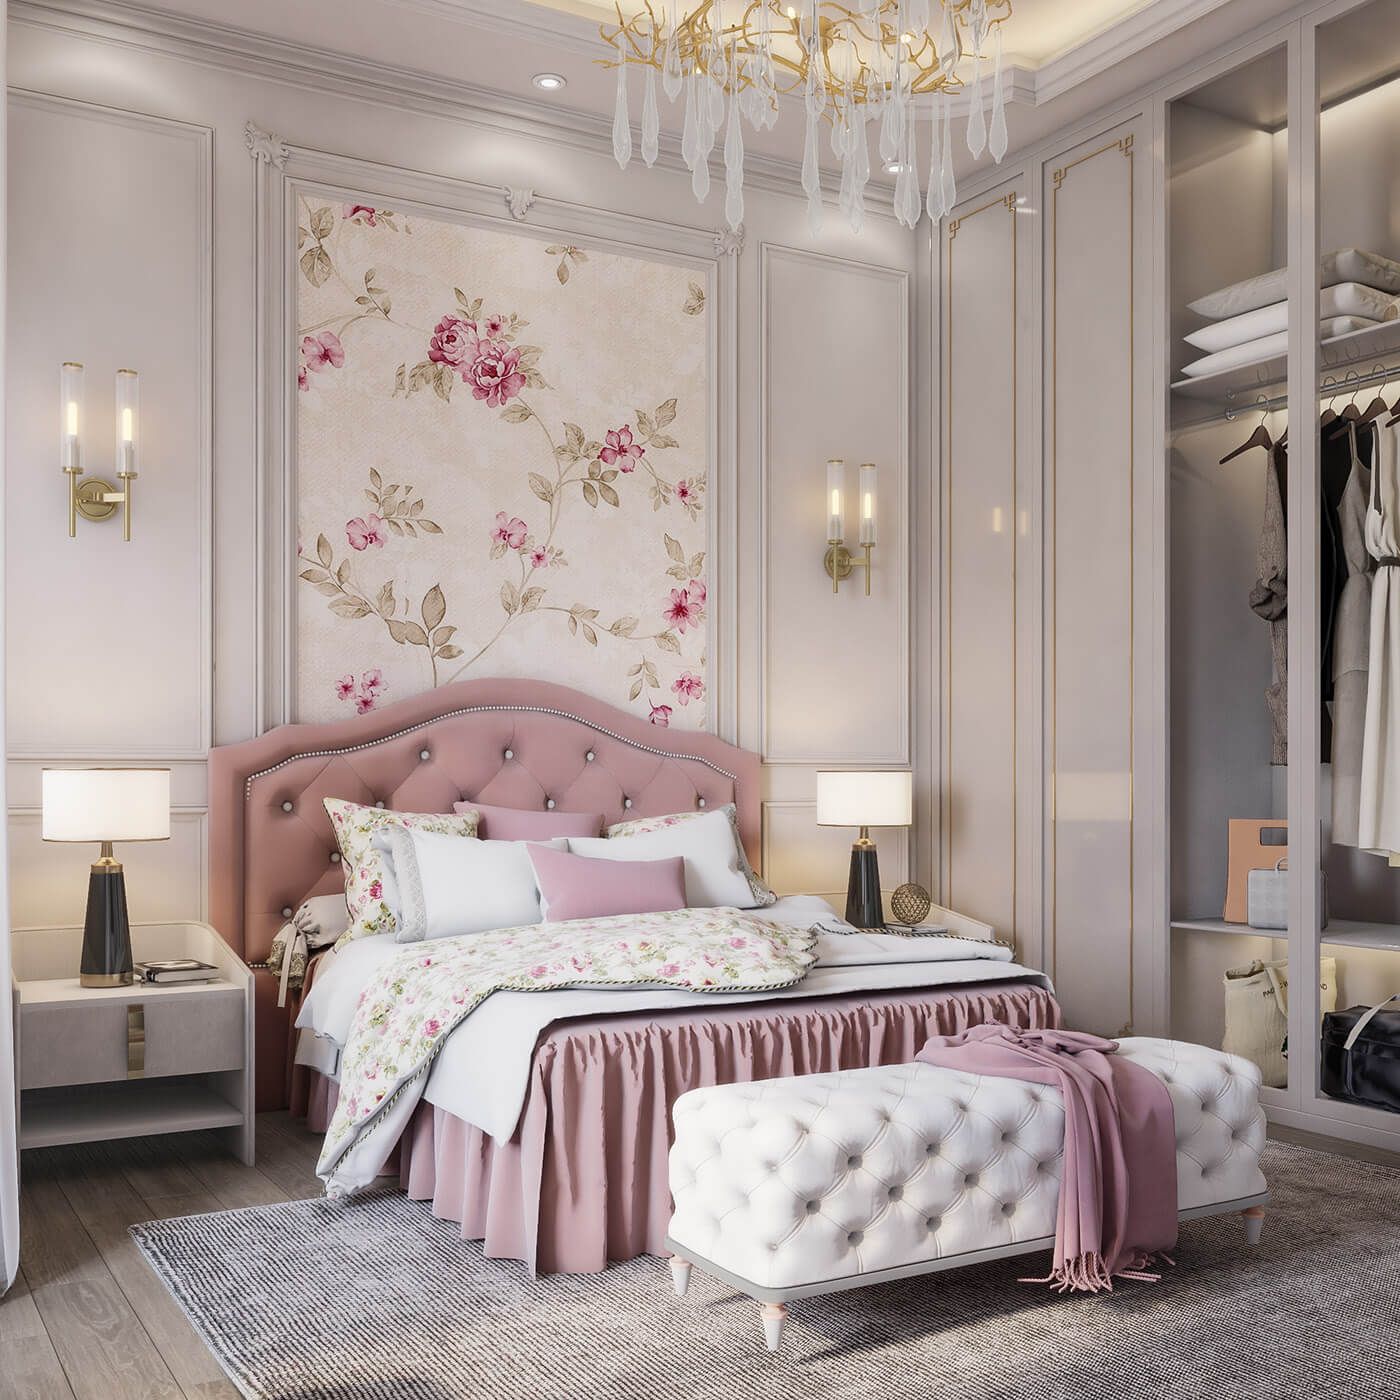 Thiết kế đường cong uống lượn từ chiếc giường ngủ màu hồng đảm bảo hơi hướng tân cổ điển cho căn phòng